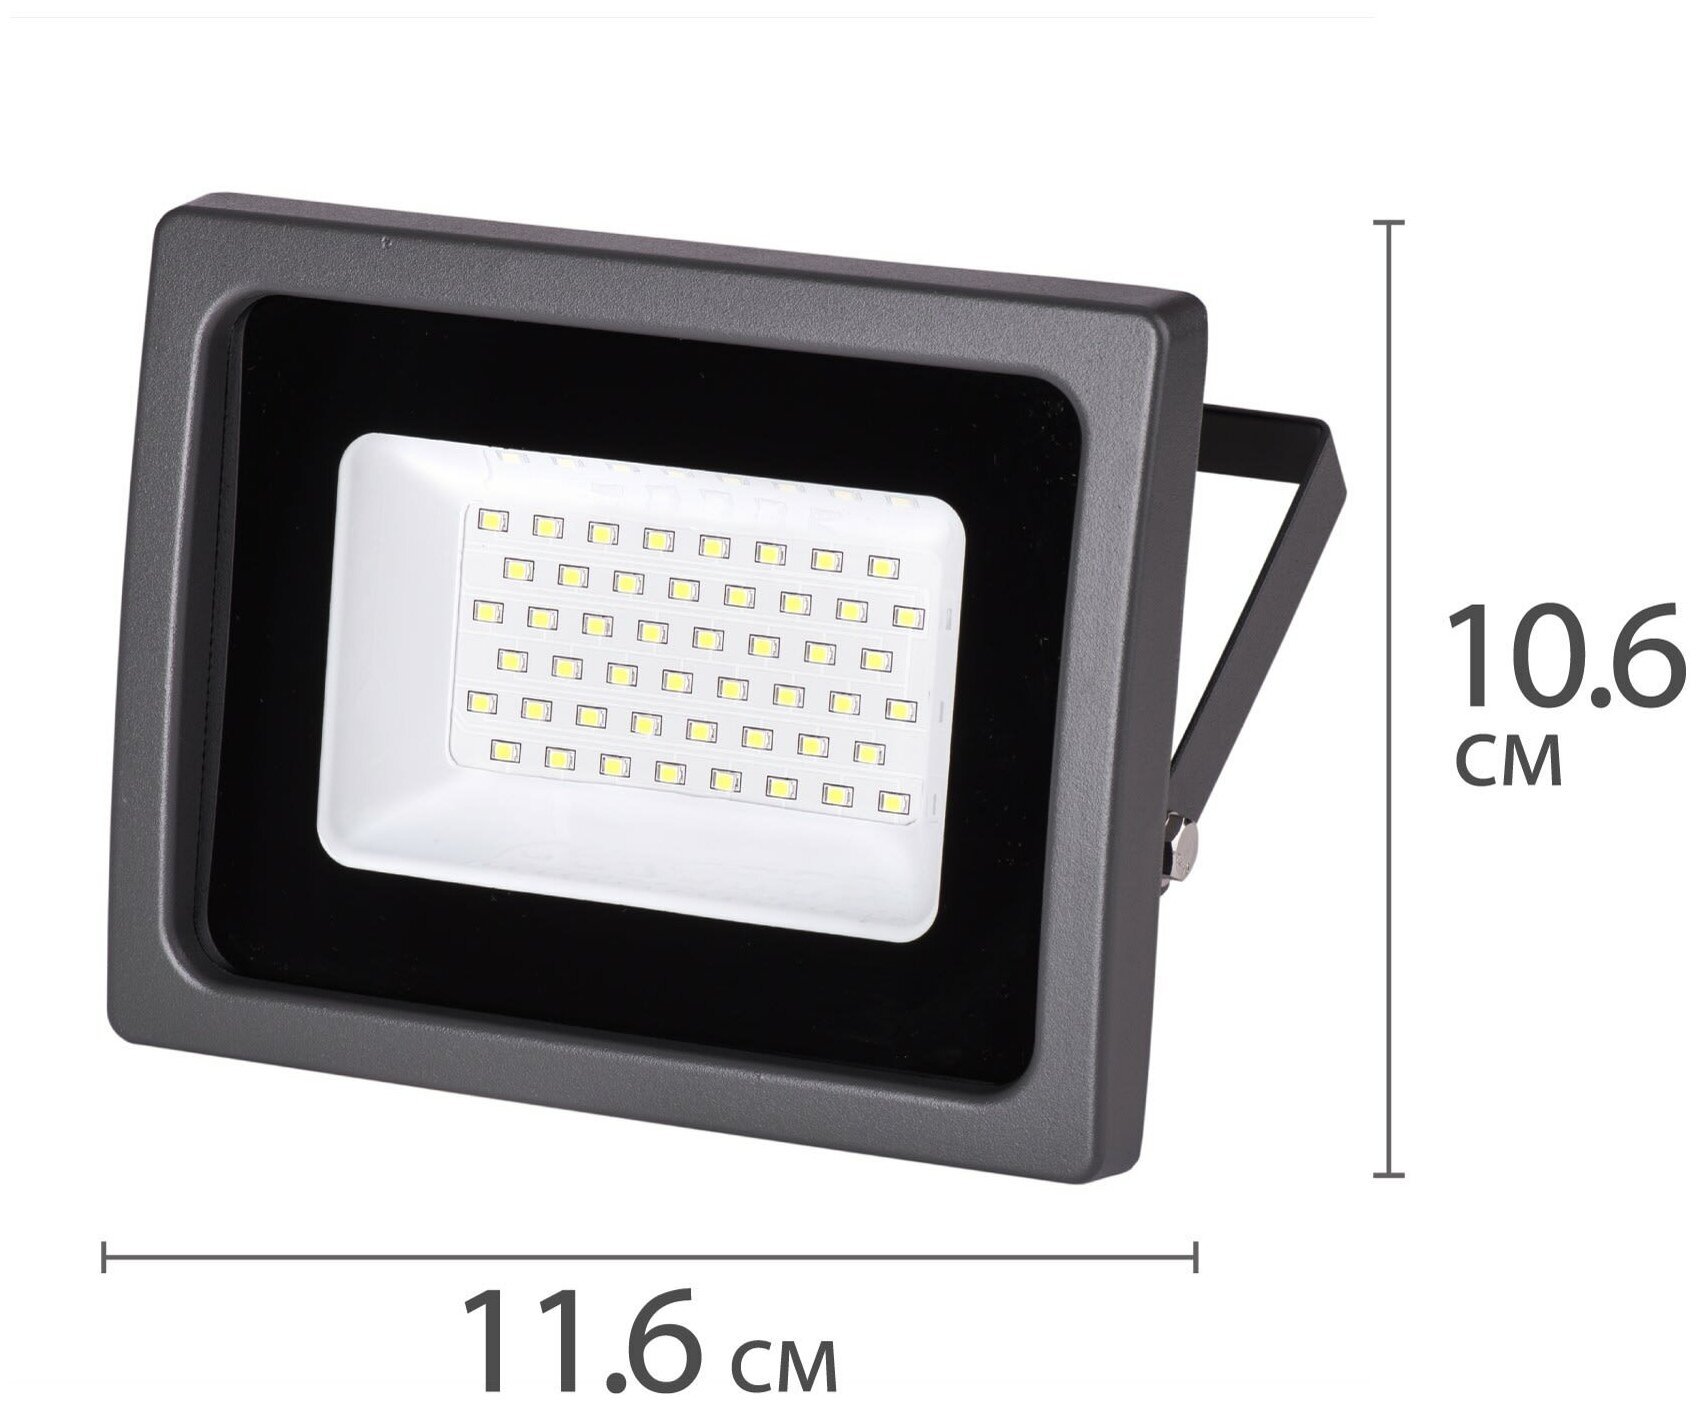 Светодиодный прожектор WOLTA WFL-20W/06 20Вт 5700К IP65 1800лм серый, цена за 1 шт.